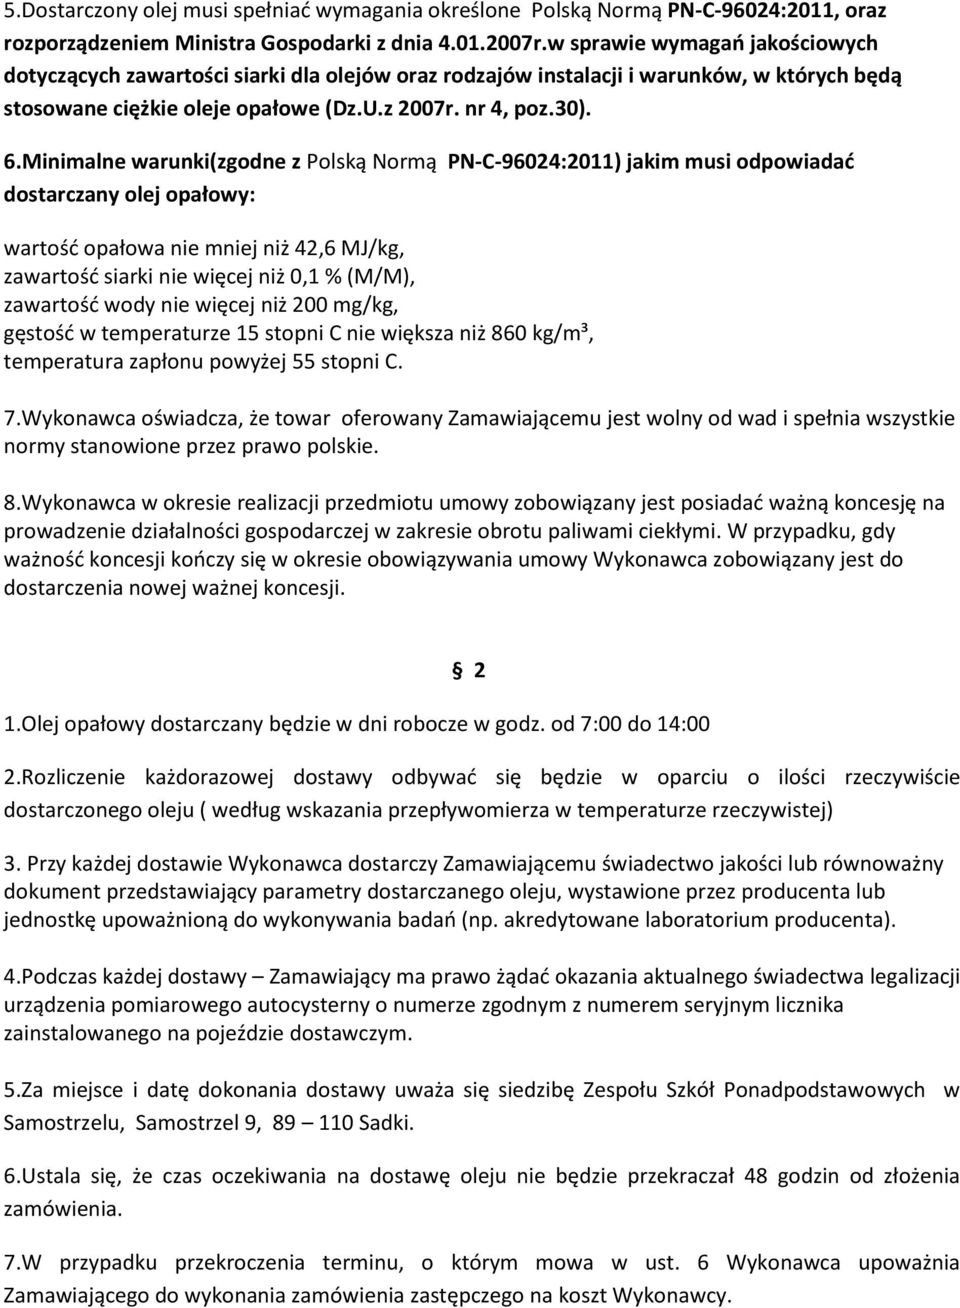 Minimalne warunki(zgodne z Polską Normą PN-C-96024:2011) jakim musi odpowiadać dostarczany olej opałowy: wartość opałowa nie mniej niż 42,6 MJ/kg, zawartość siarki nie więcej niż 0,1 % (M/M),